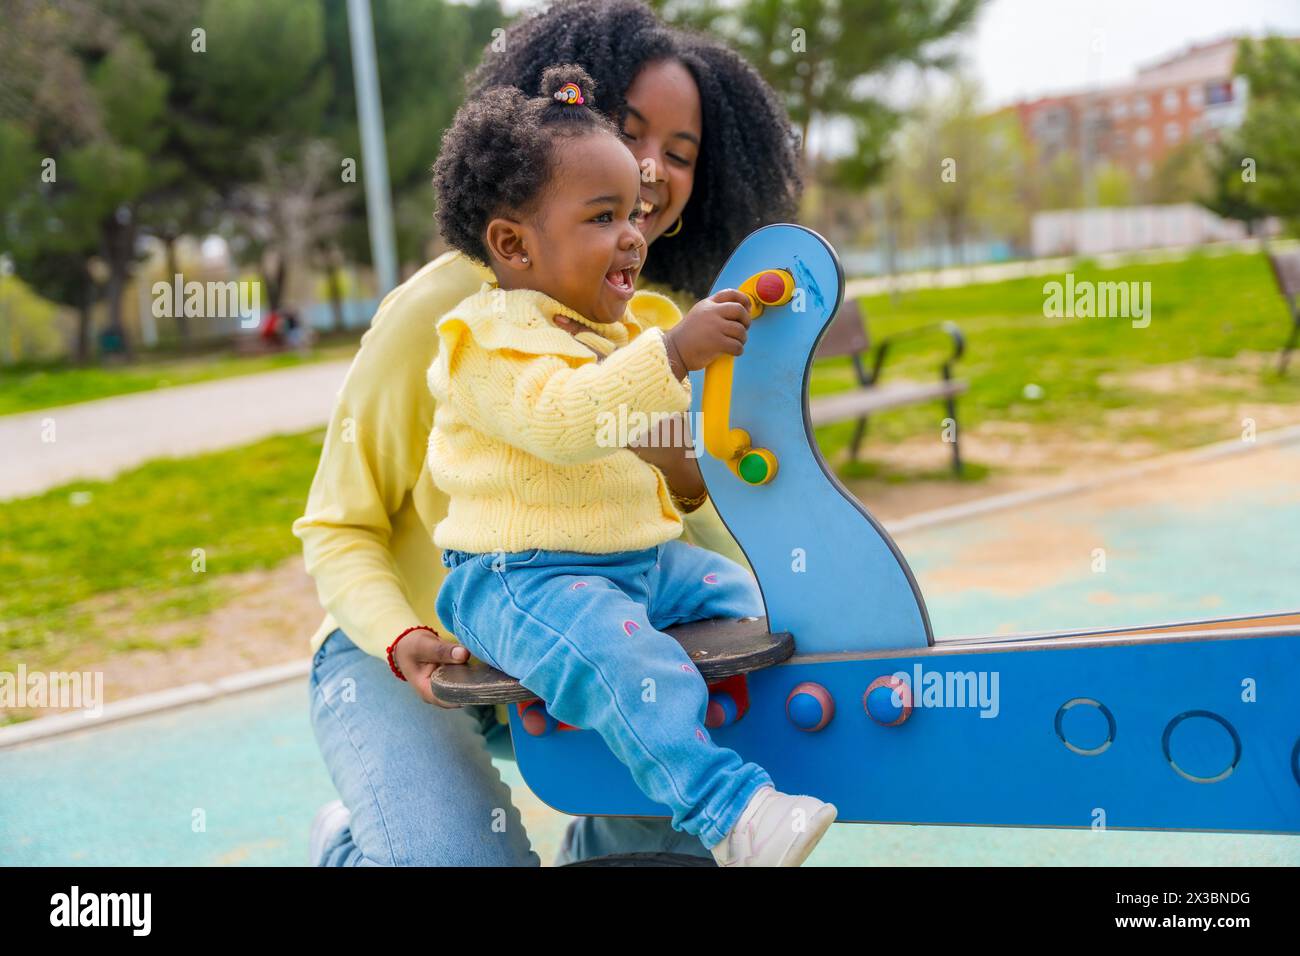 Afrikanische Tochter, die mit ihrer Mutter in einem öffentlichen Park eine Schaukel genießt Stockfoto